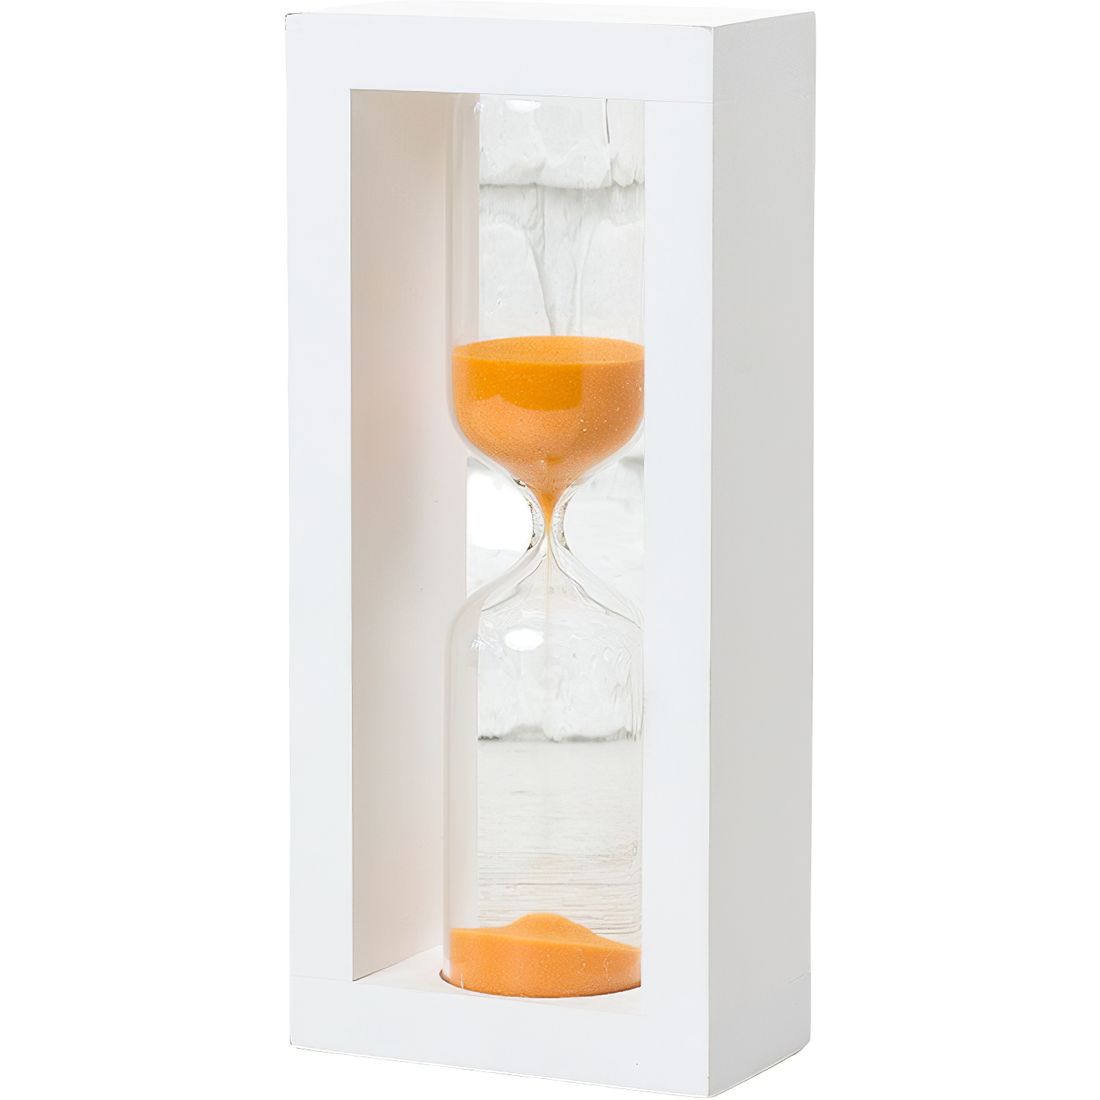 Пісочний годинник Склоприлад 4-28, 15 хвилин пісок помаранчевий білий (300595) - фото 1